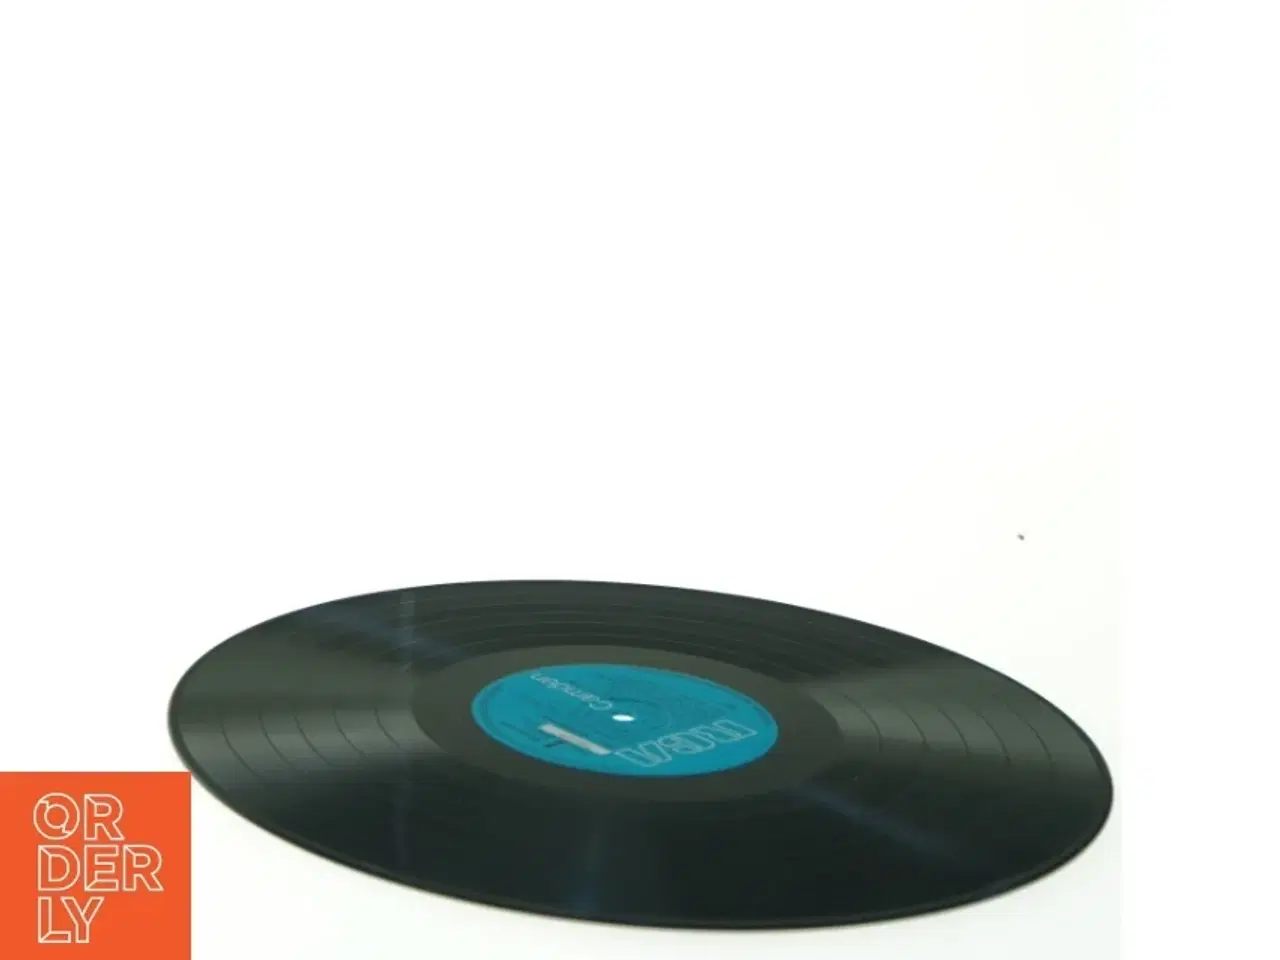 Billede 3 - Ain't Misbehavin af Fats Waller and His Rhythm (LP) fra RCA Camden (str. 31 x 31 cm)